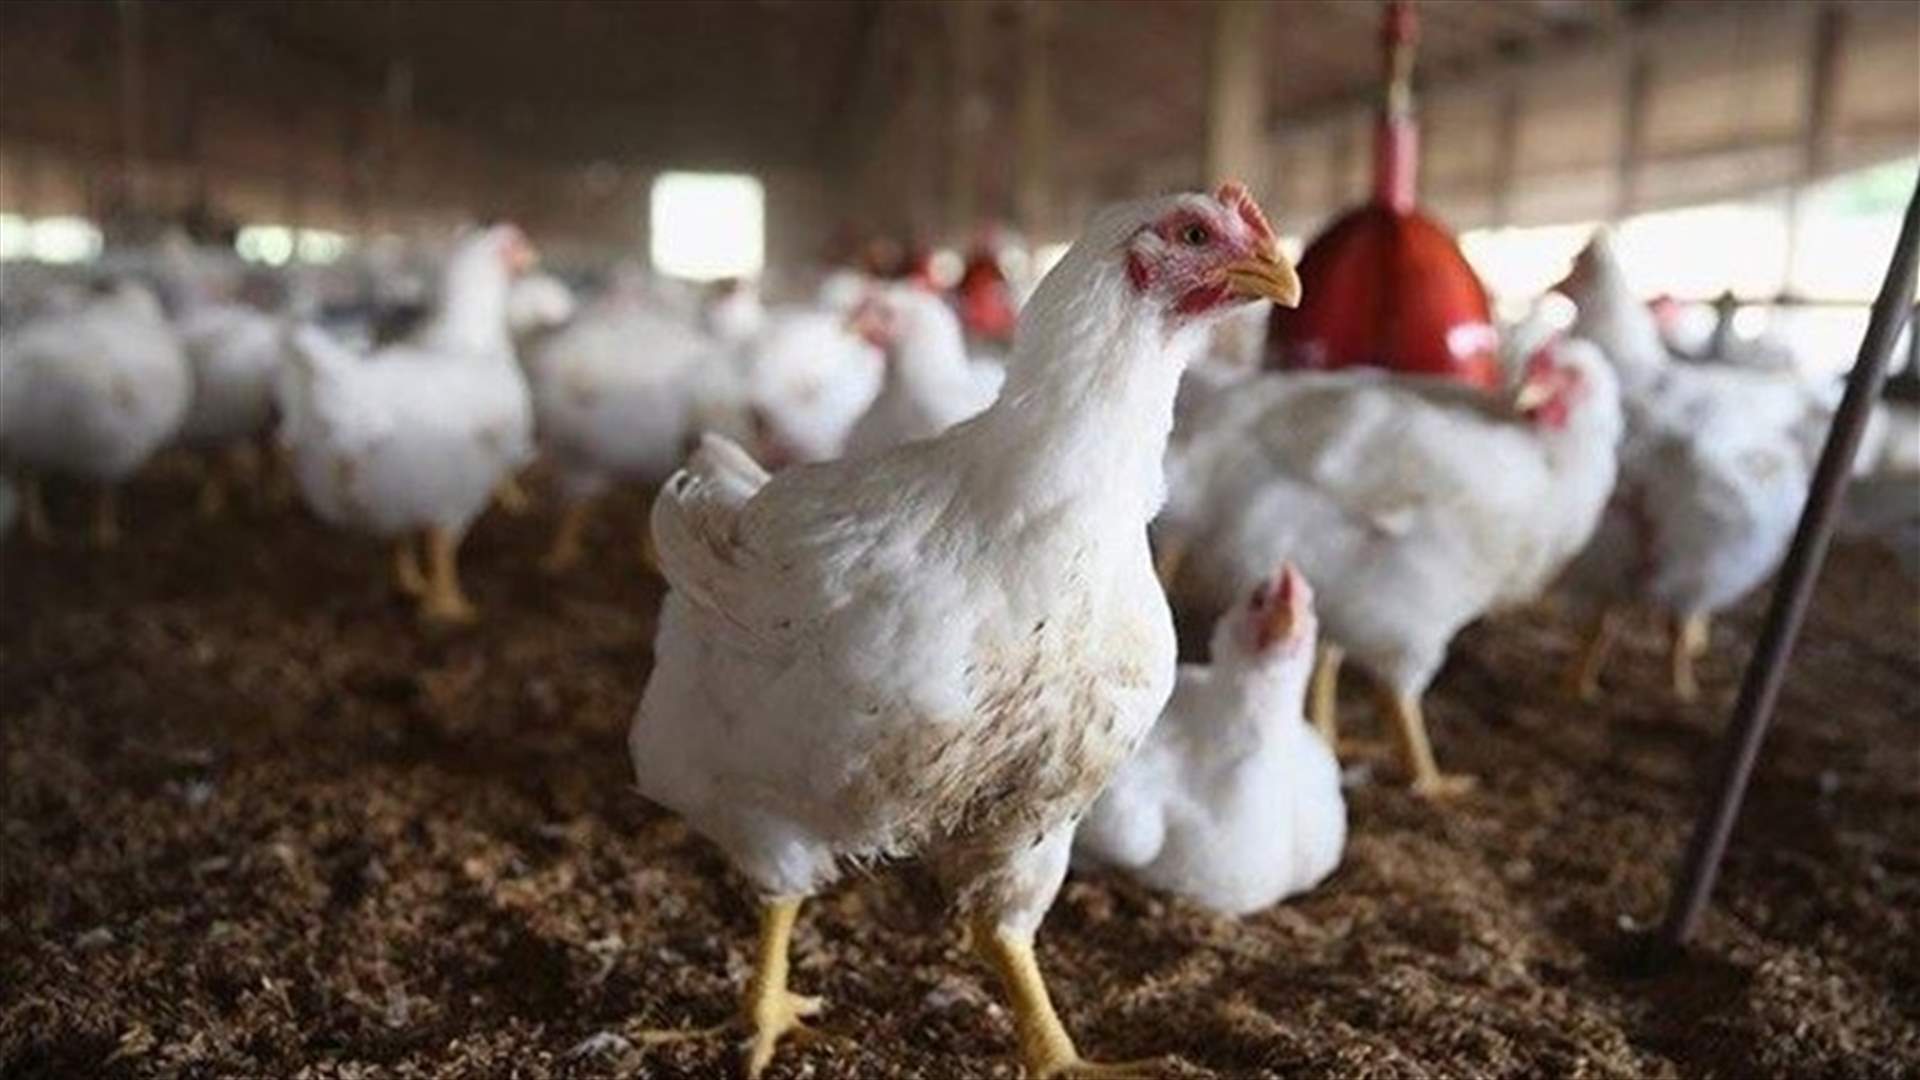 نقابة الدواجن تطلق نداء إستغاثة: أوقفوا استيراد الدجاج المجلد وسدّدوا مستحقاتنا